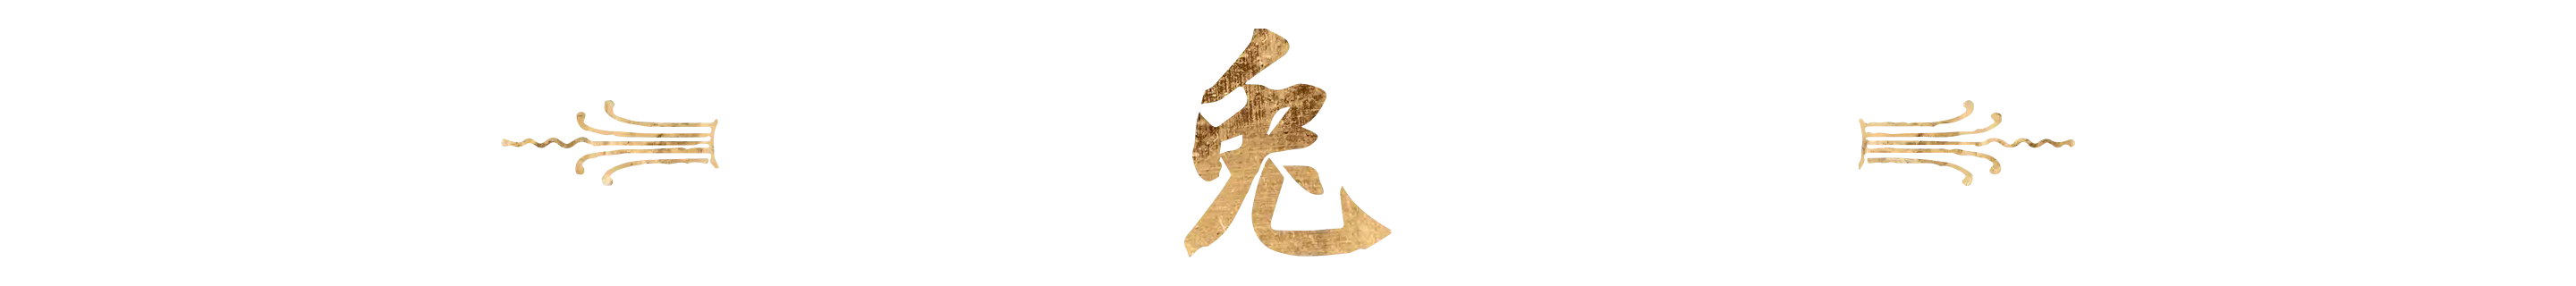 Rabbit Chinese character